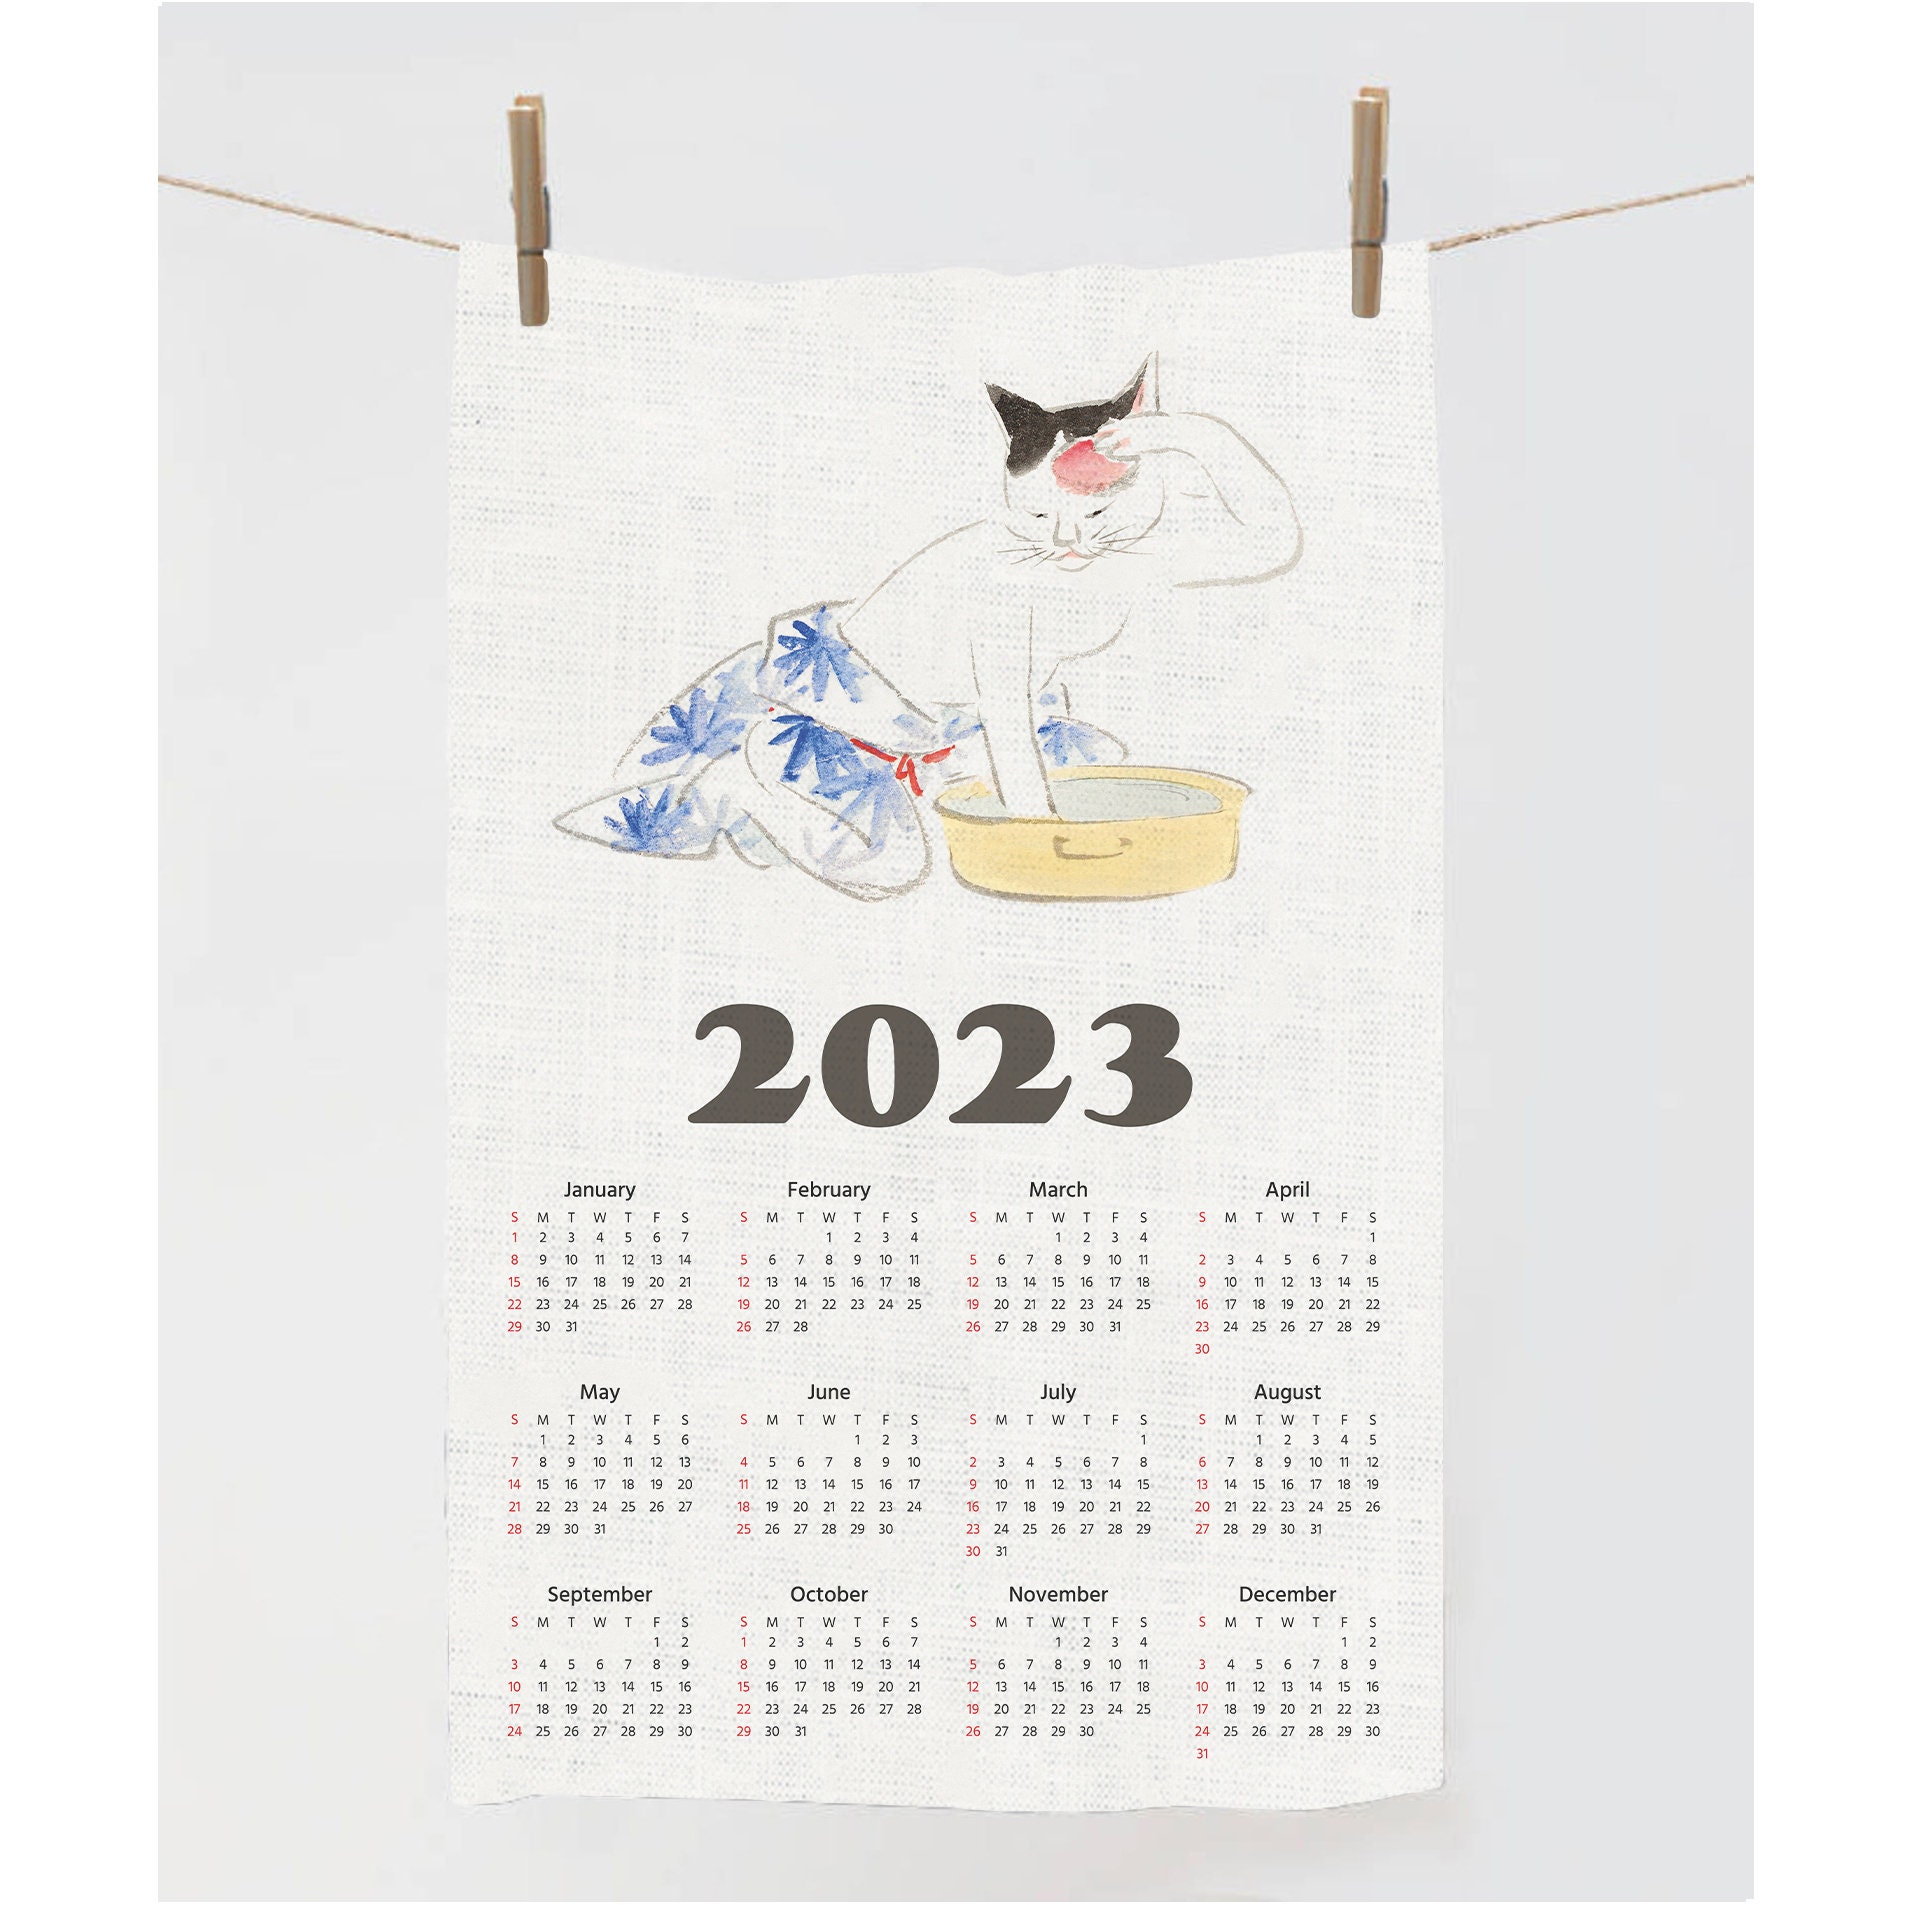 2023-calendar-towel-tea-towel-illustration-cat-towel-zodiac-tea-towel-linen-towel-100-linen